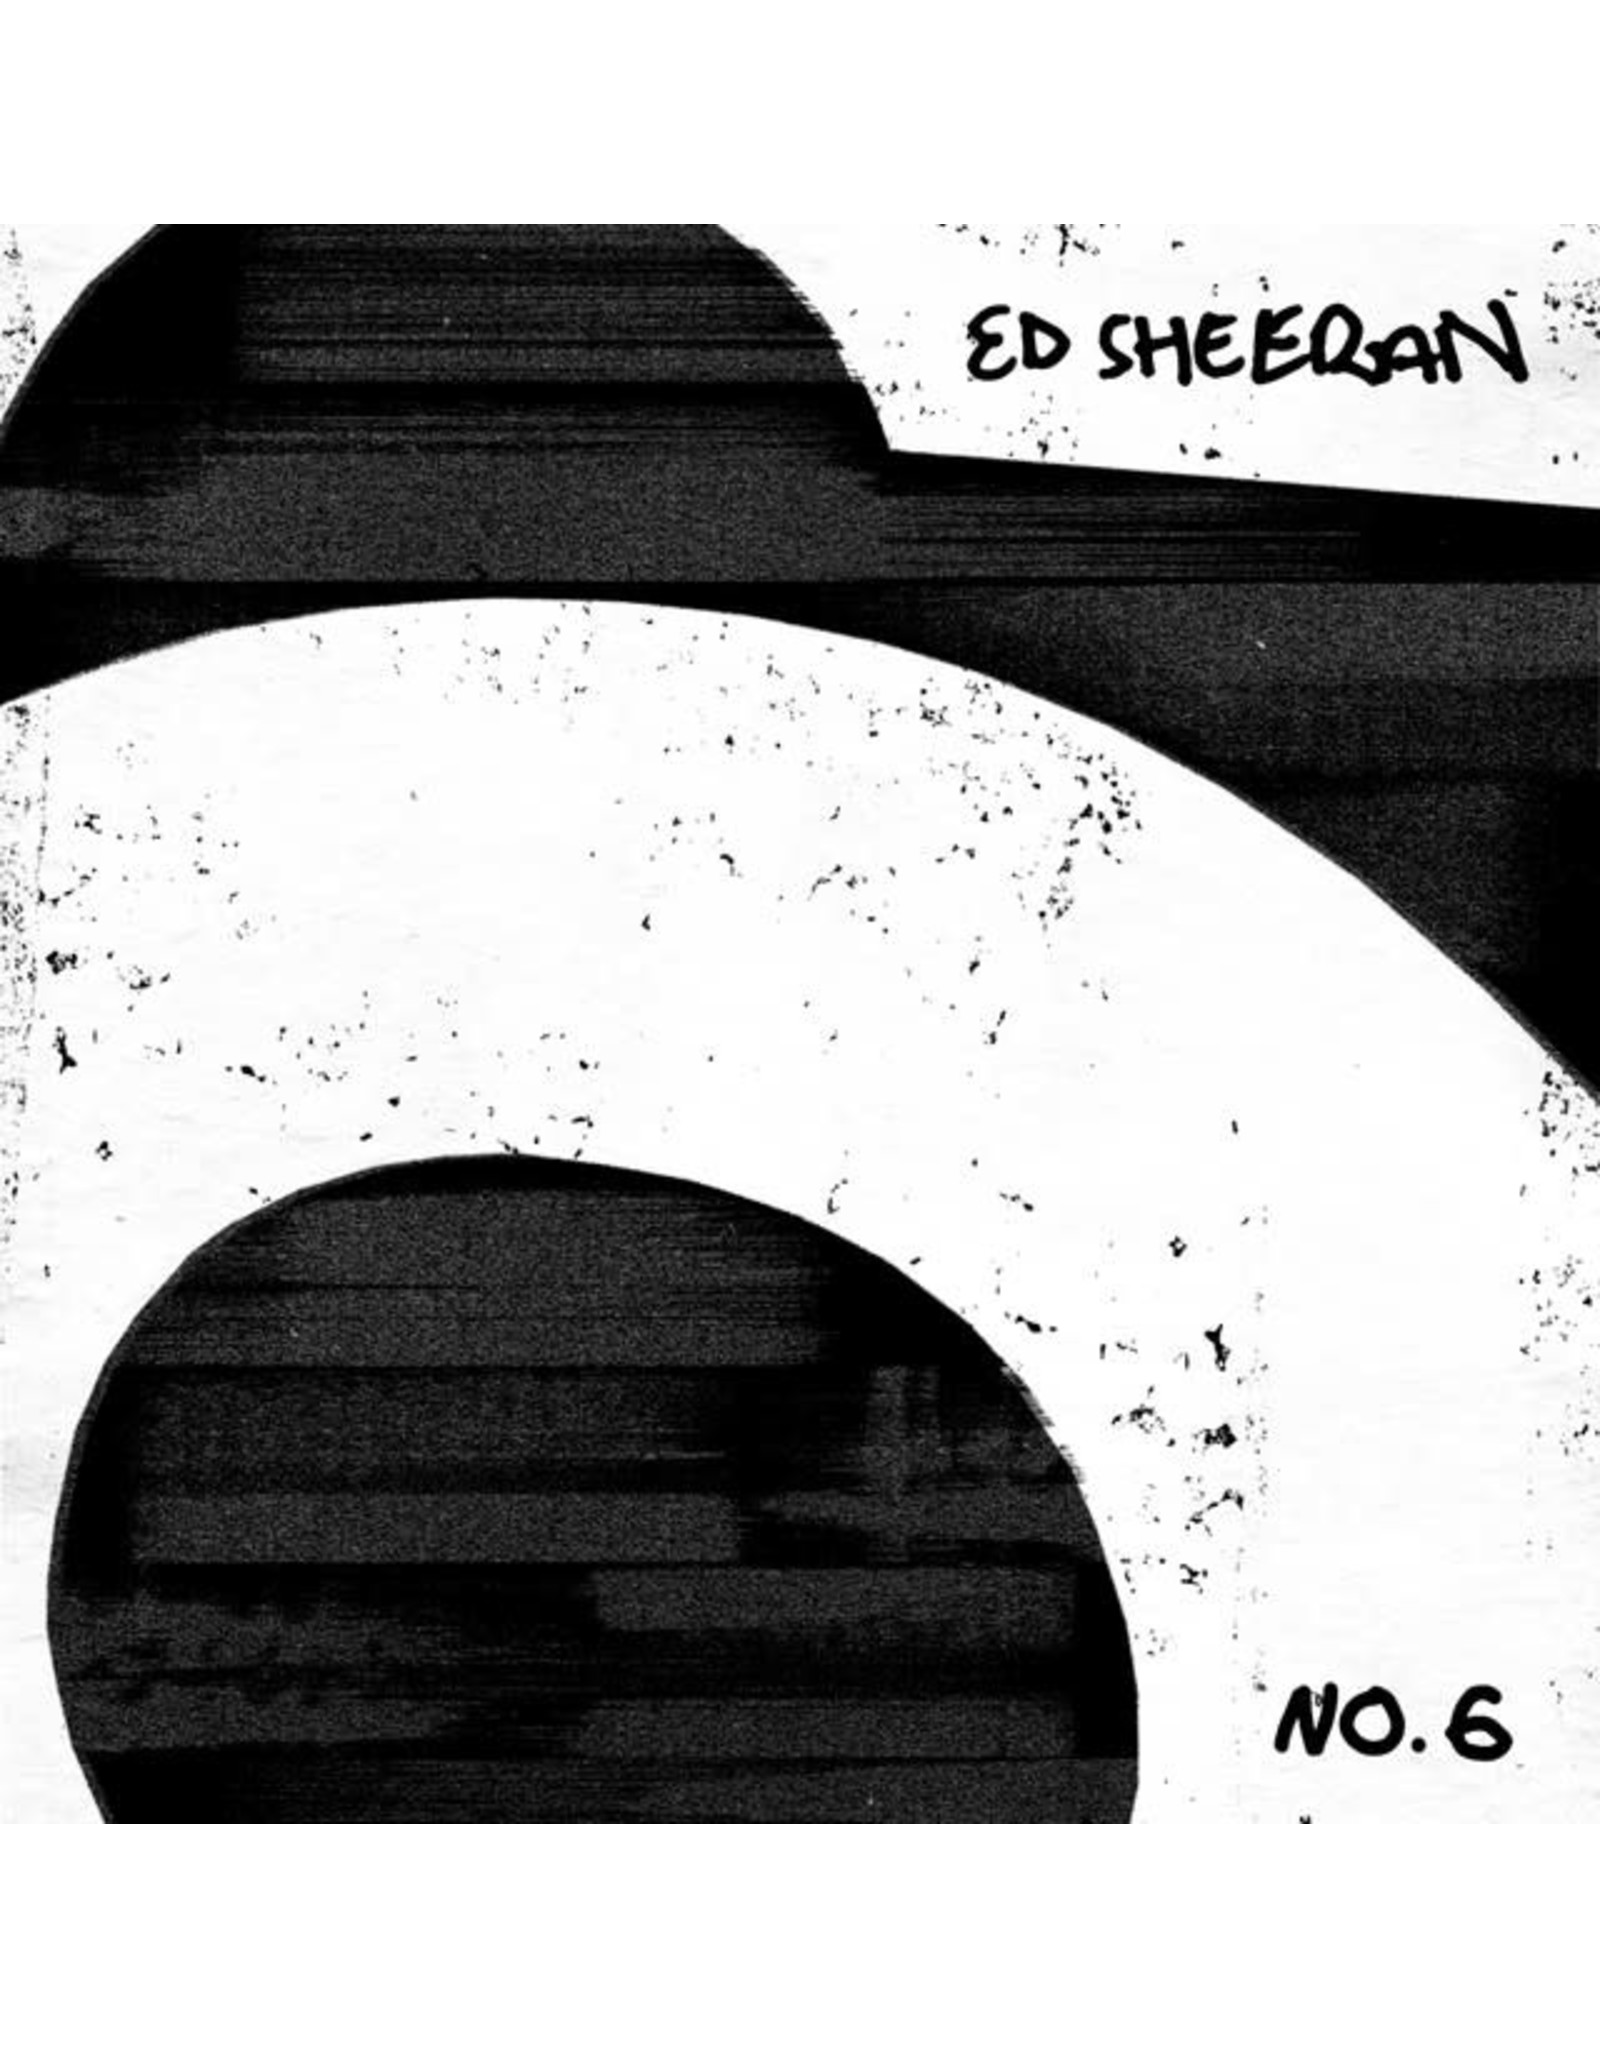 Ed Sheeran - No. 6 Collaborations Project